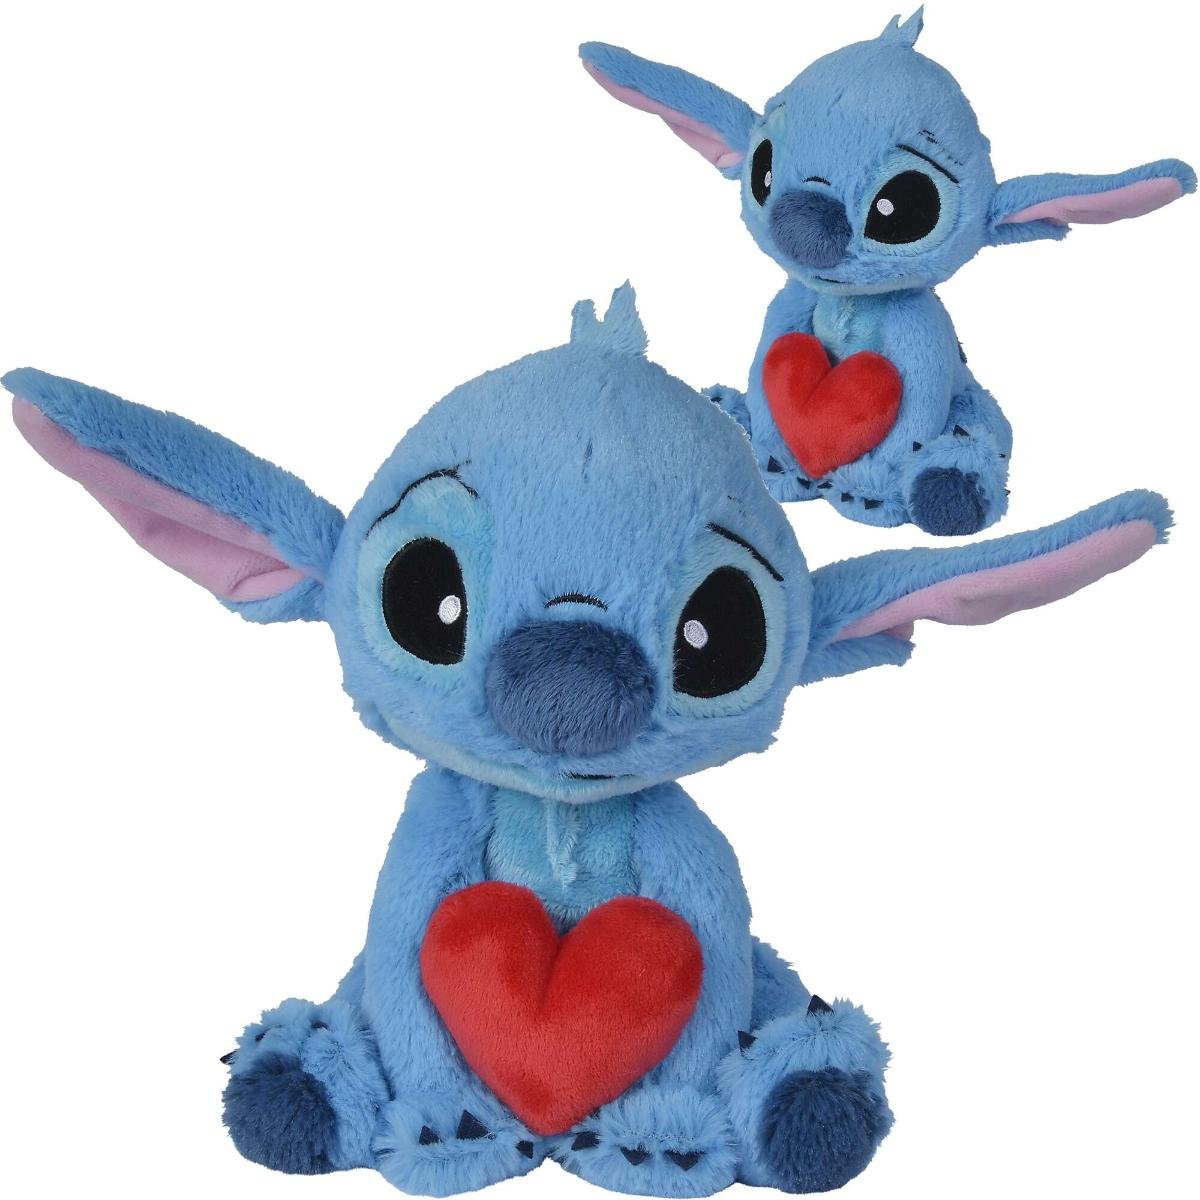 Zdjęcia - Maskotka Simba Lilo i Stitch  pluszak Stitch z sercem 25 cm Disney 